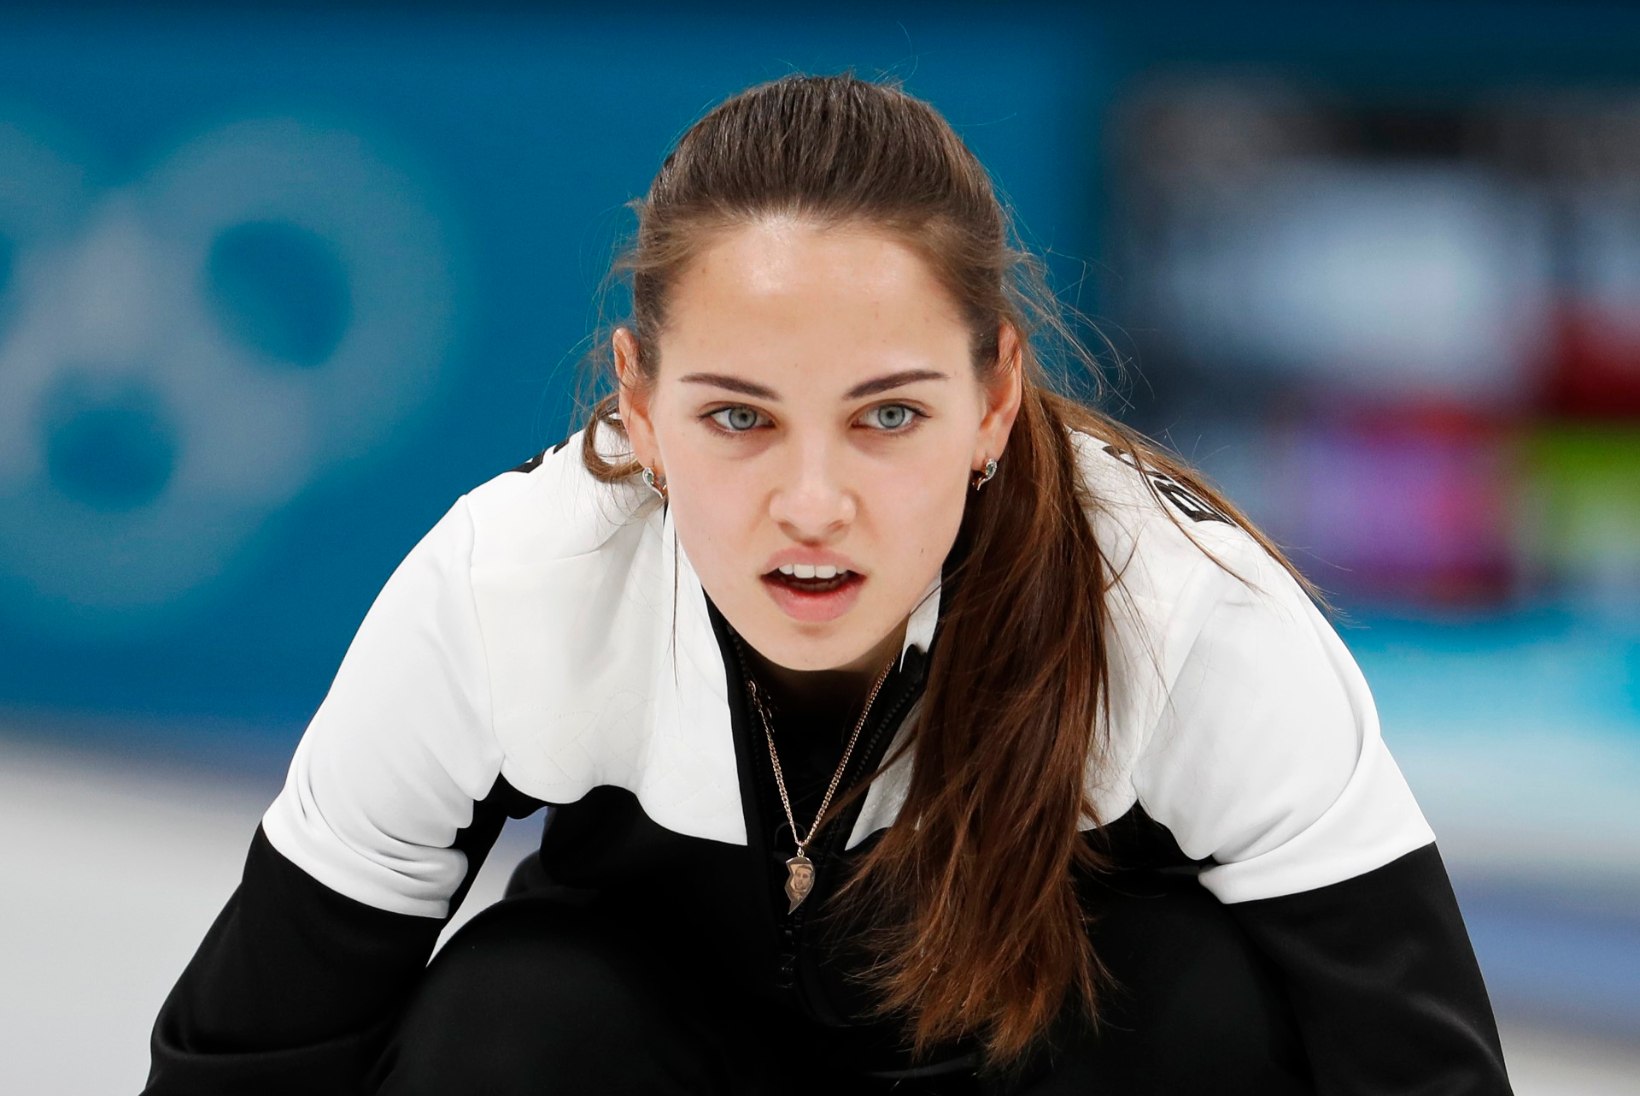 KUUMAD FOTOD | „Mina, ja Bondi-tüdruk?“ Venemaa curlingumängija modellilik välimus lööb olümpial laineid